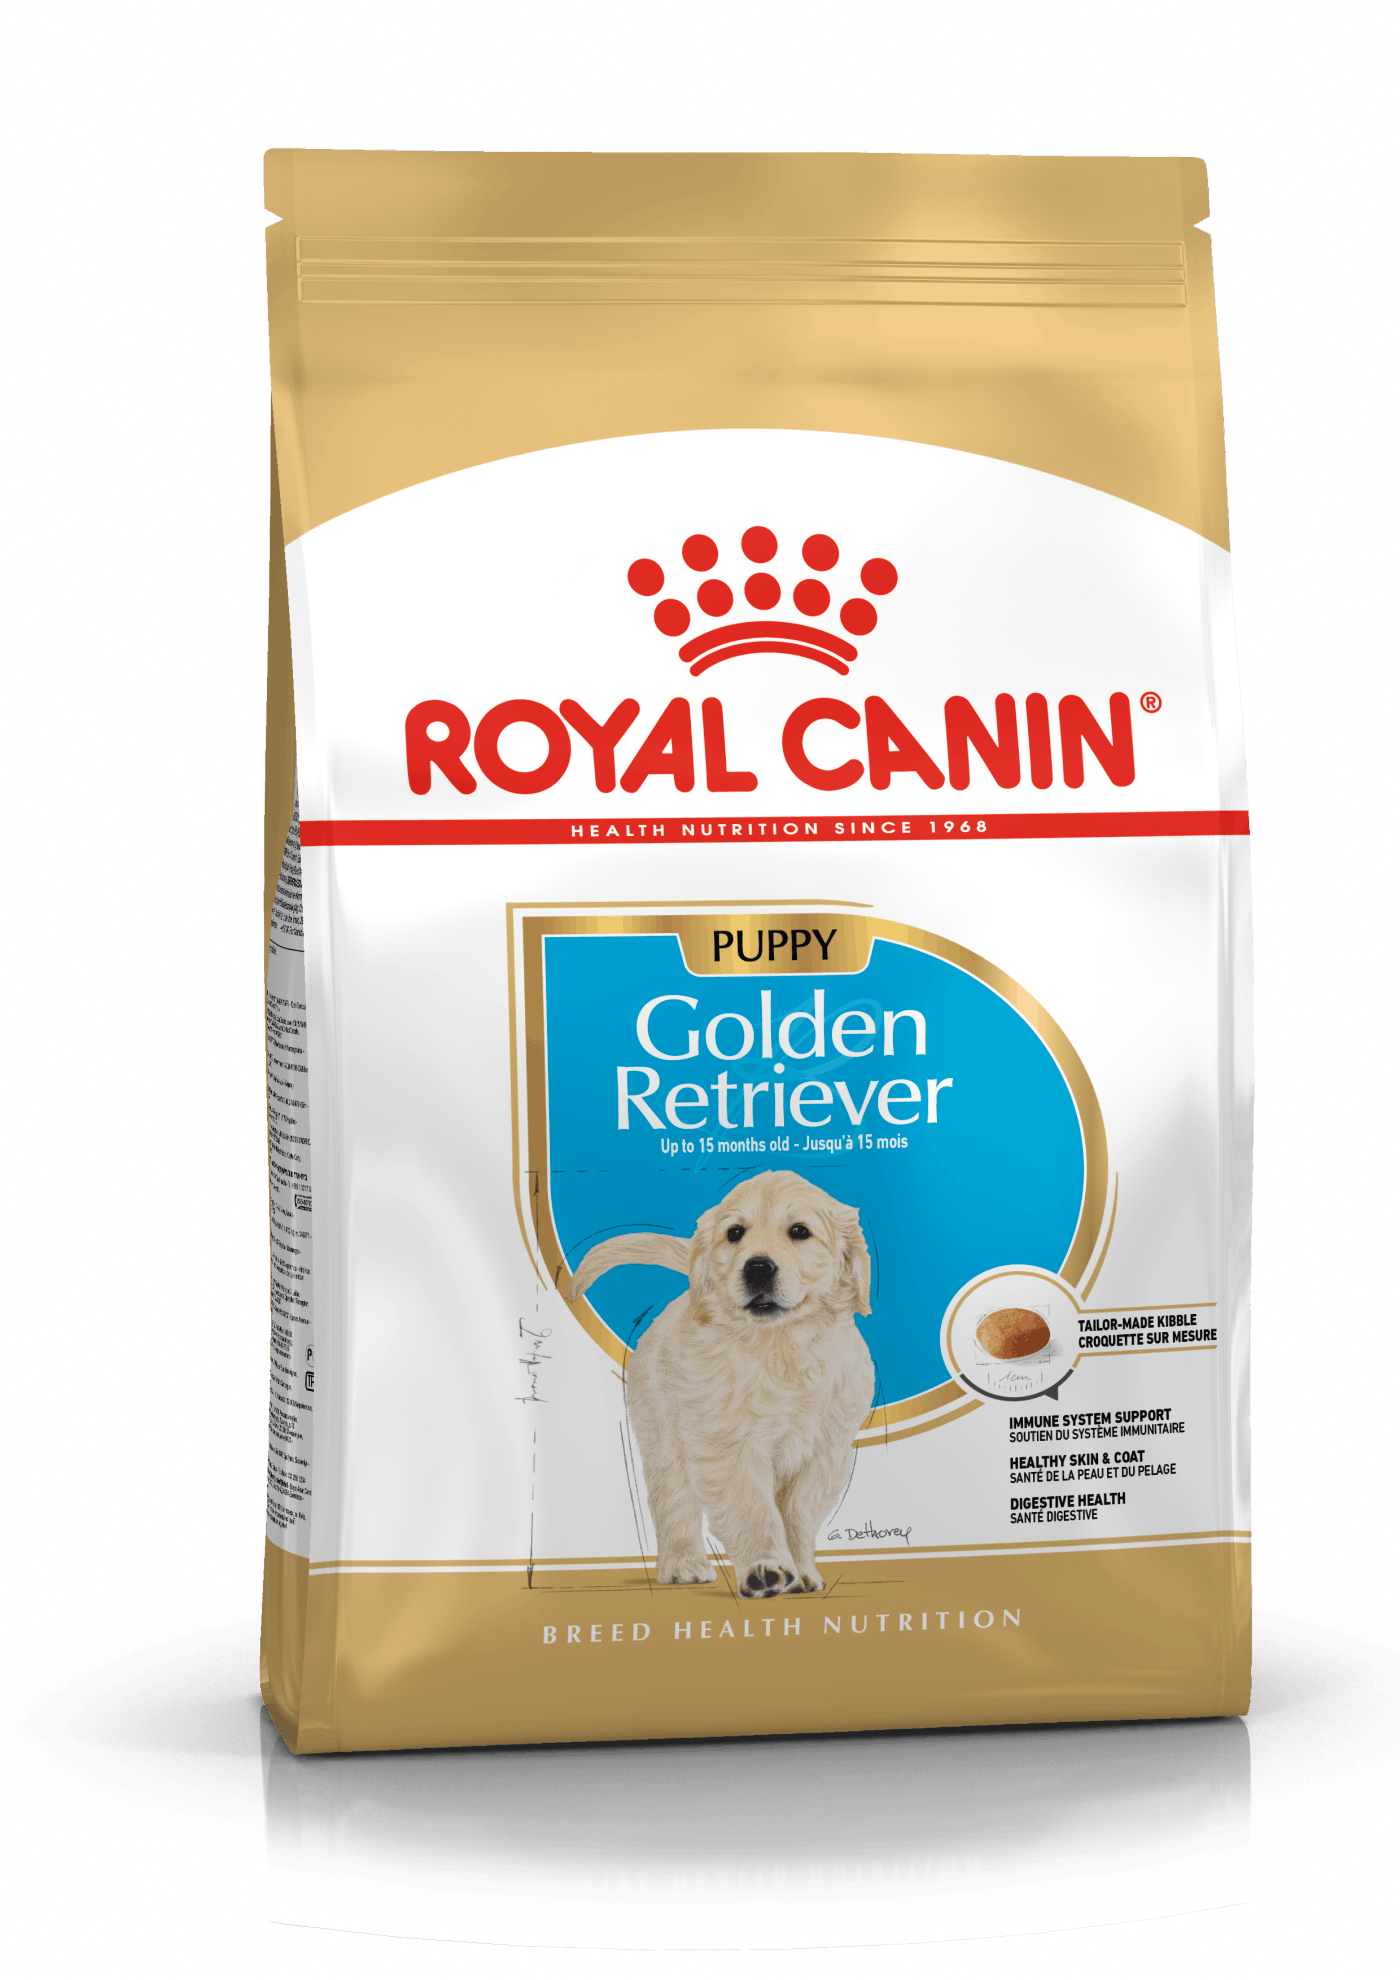 Se Royal Canin Golden Retriever Puppy - op til 15 måneder. 12kg hos Alttilhundogkat.dk